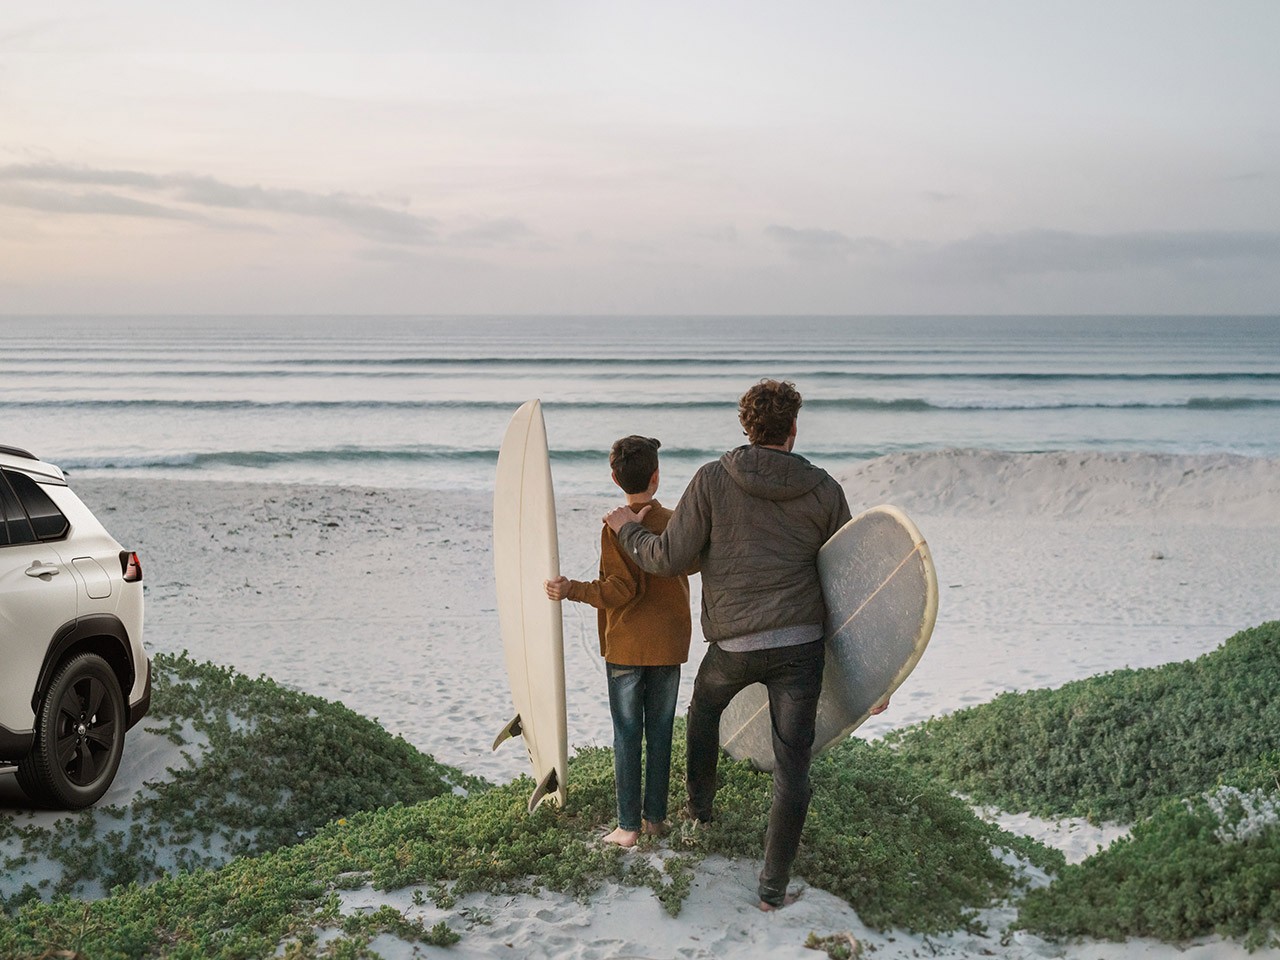 Ein Mann und ein Kind schauen auf den Horizont im Meer mit Surfboards in den Händen